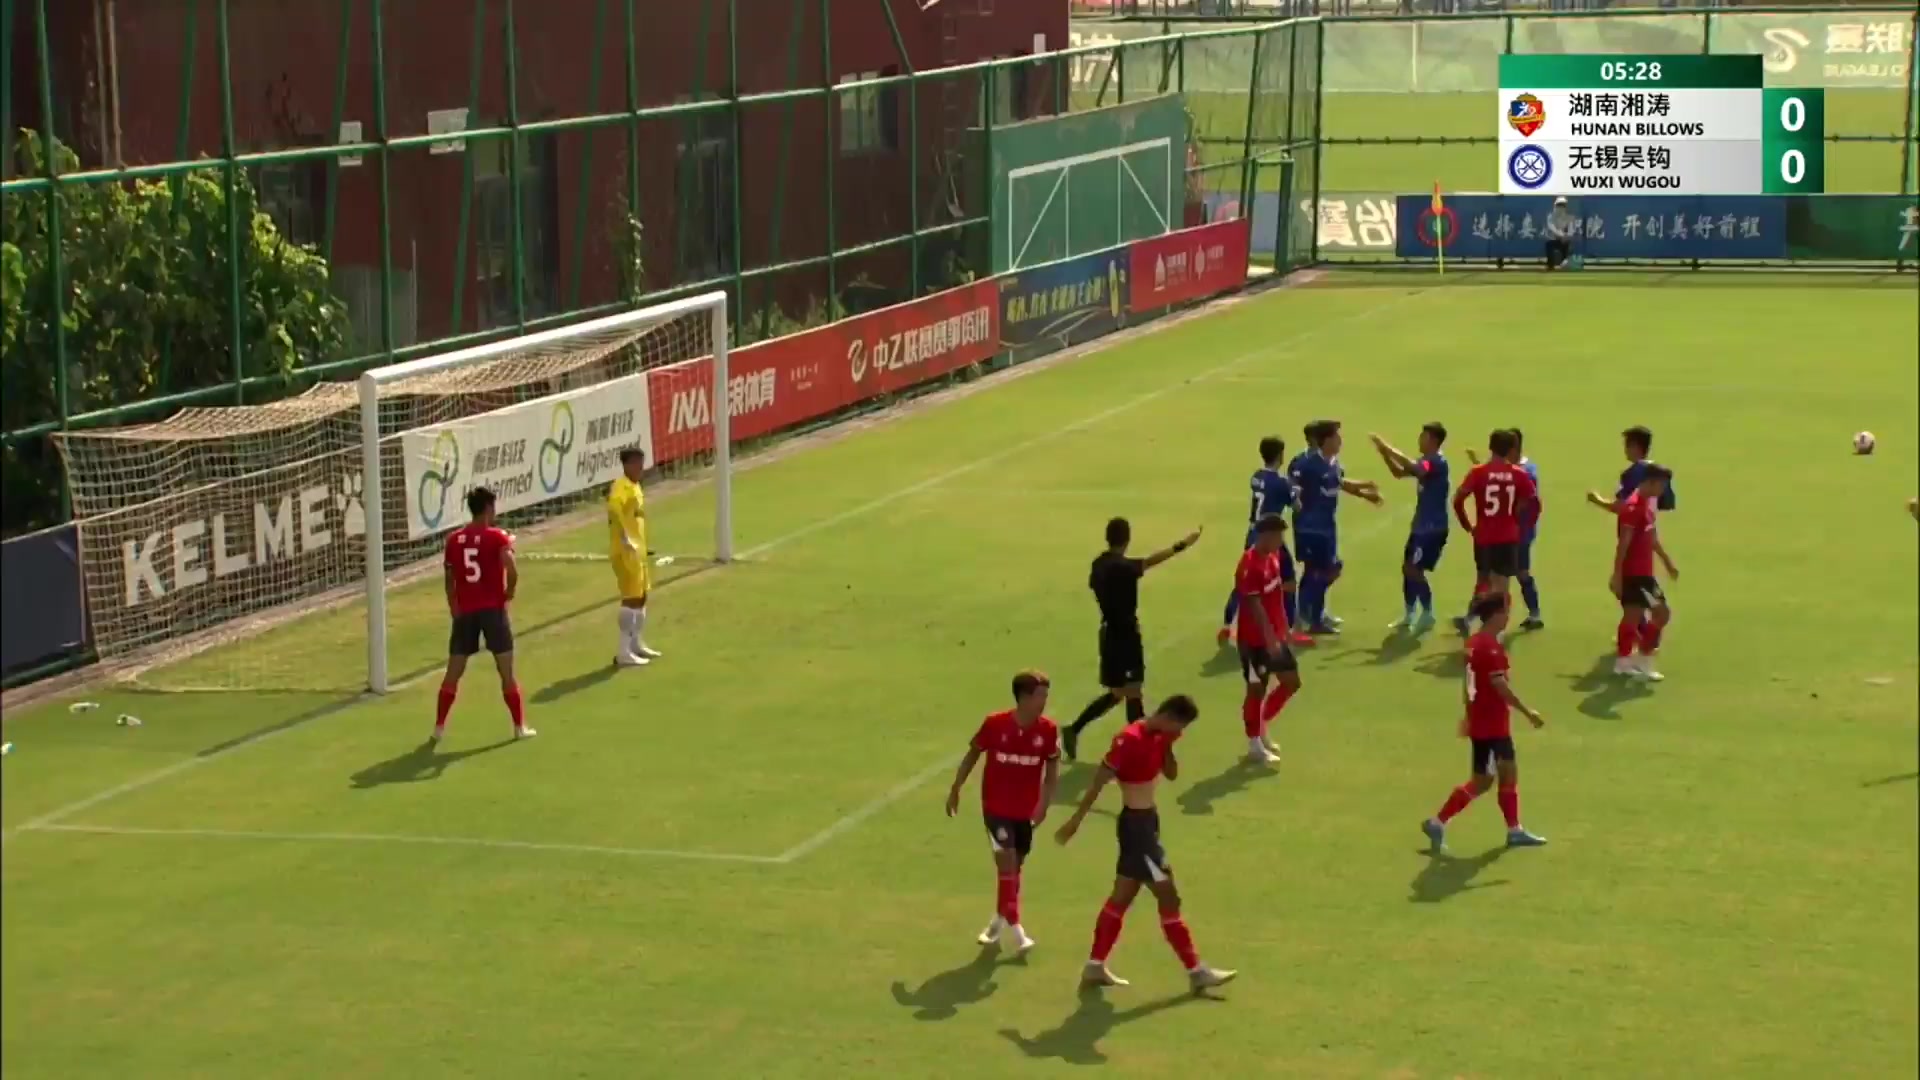 CHA D2 Hunan Billows Vs Wuxi Wugou Li Wenyong Goal in 5 min, Score 0:1